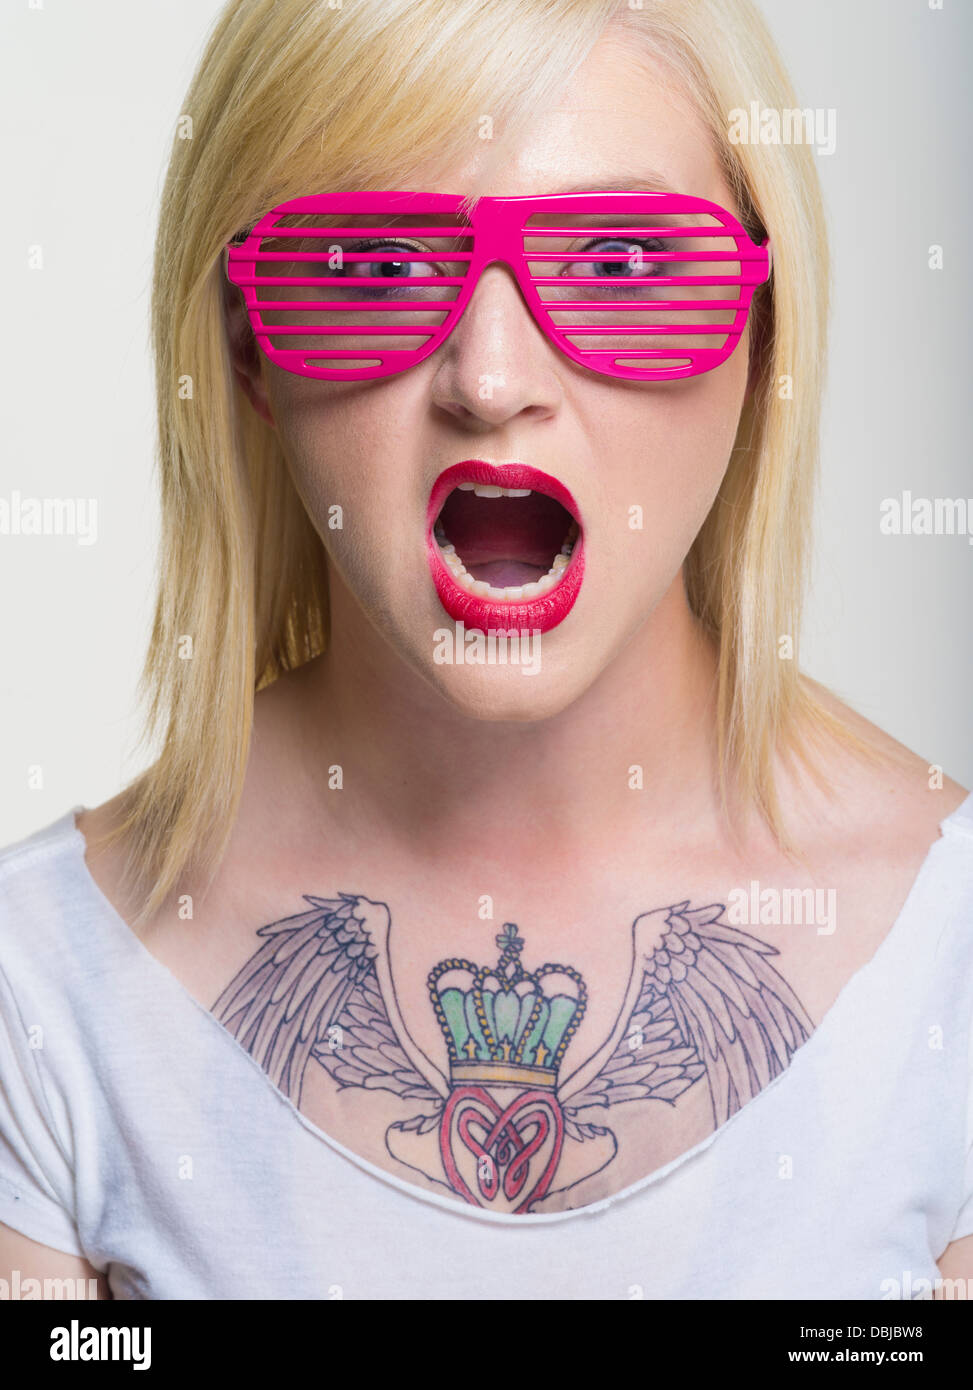 Les jeunes libre avec un grand tatouage de Claddagh sur la poitrine portant des lunettes à fentes rose Banque D'Images